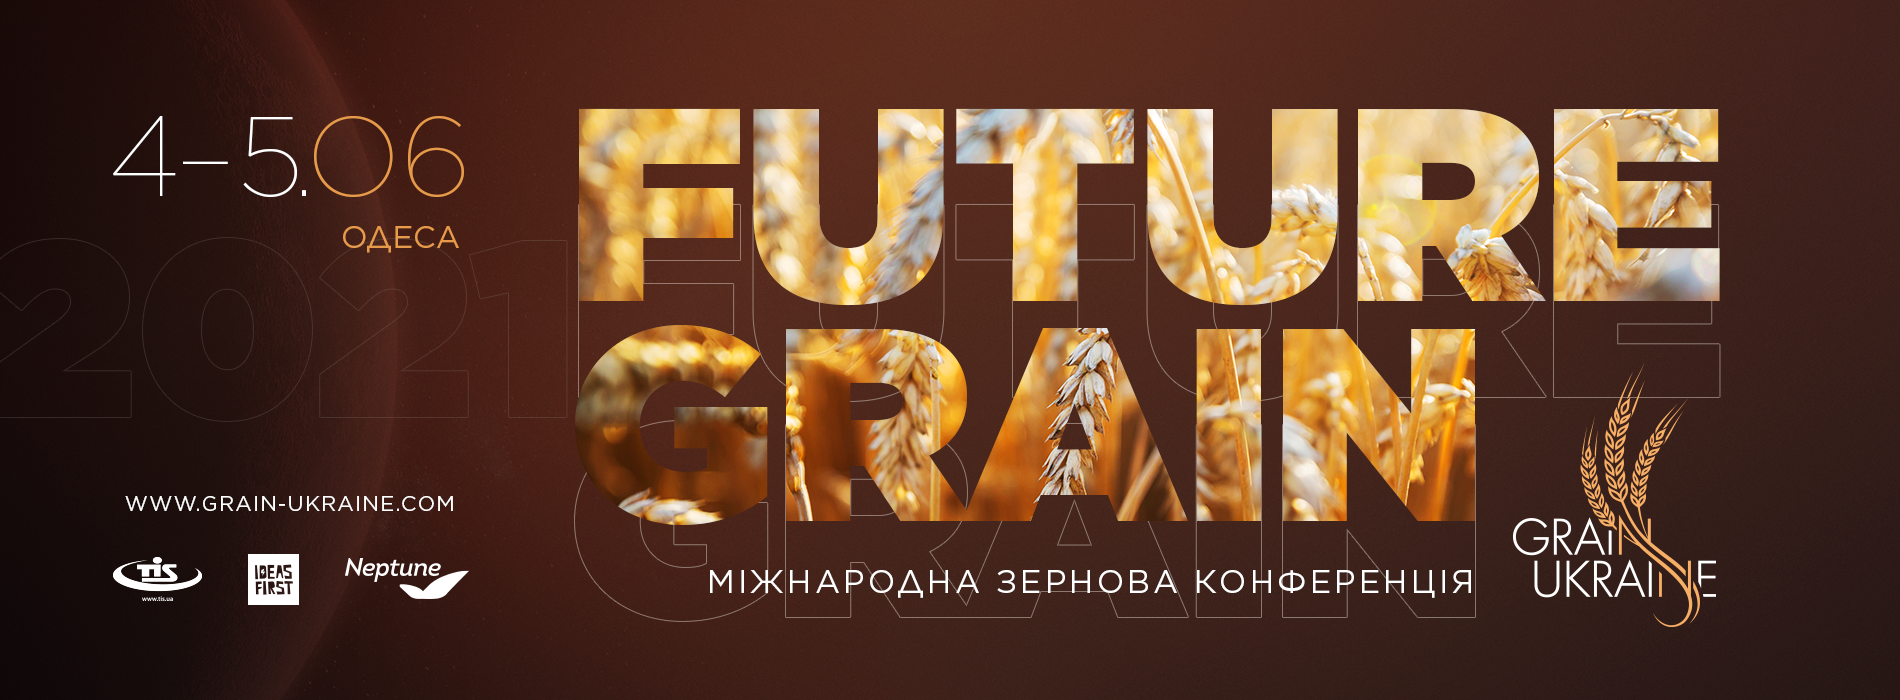 VI Міжнародна зернова конференція Grain Ukraine